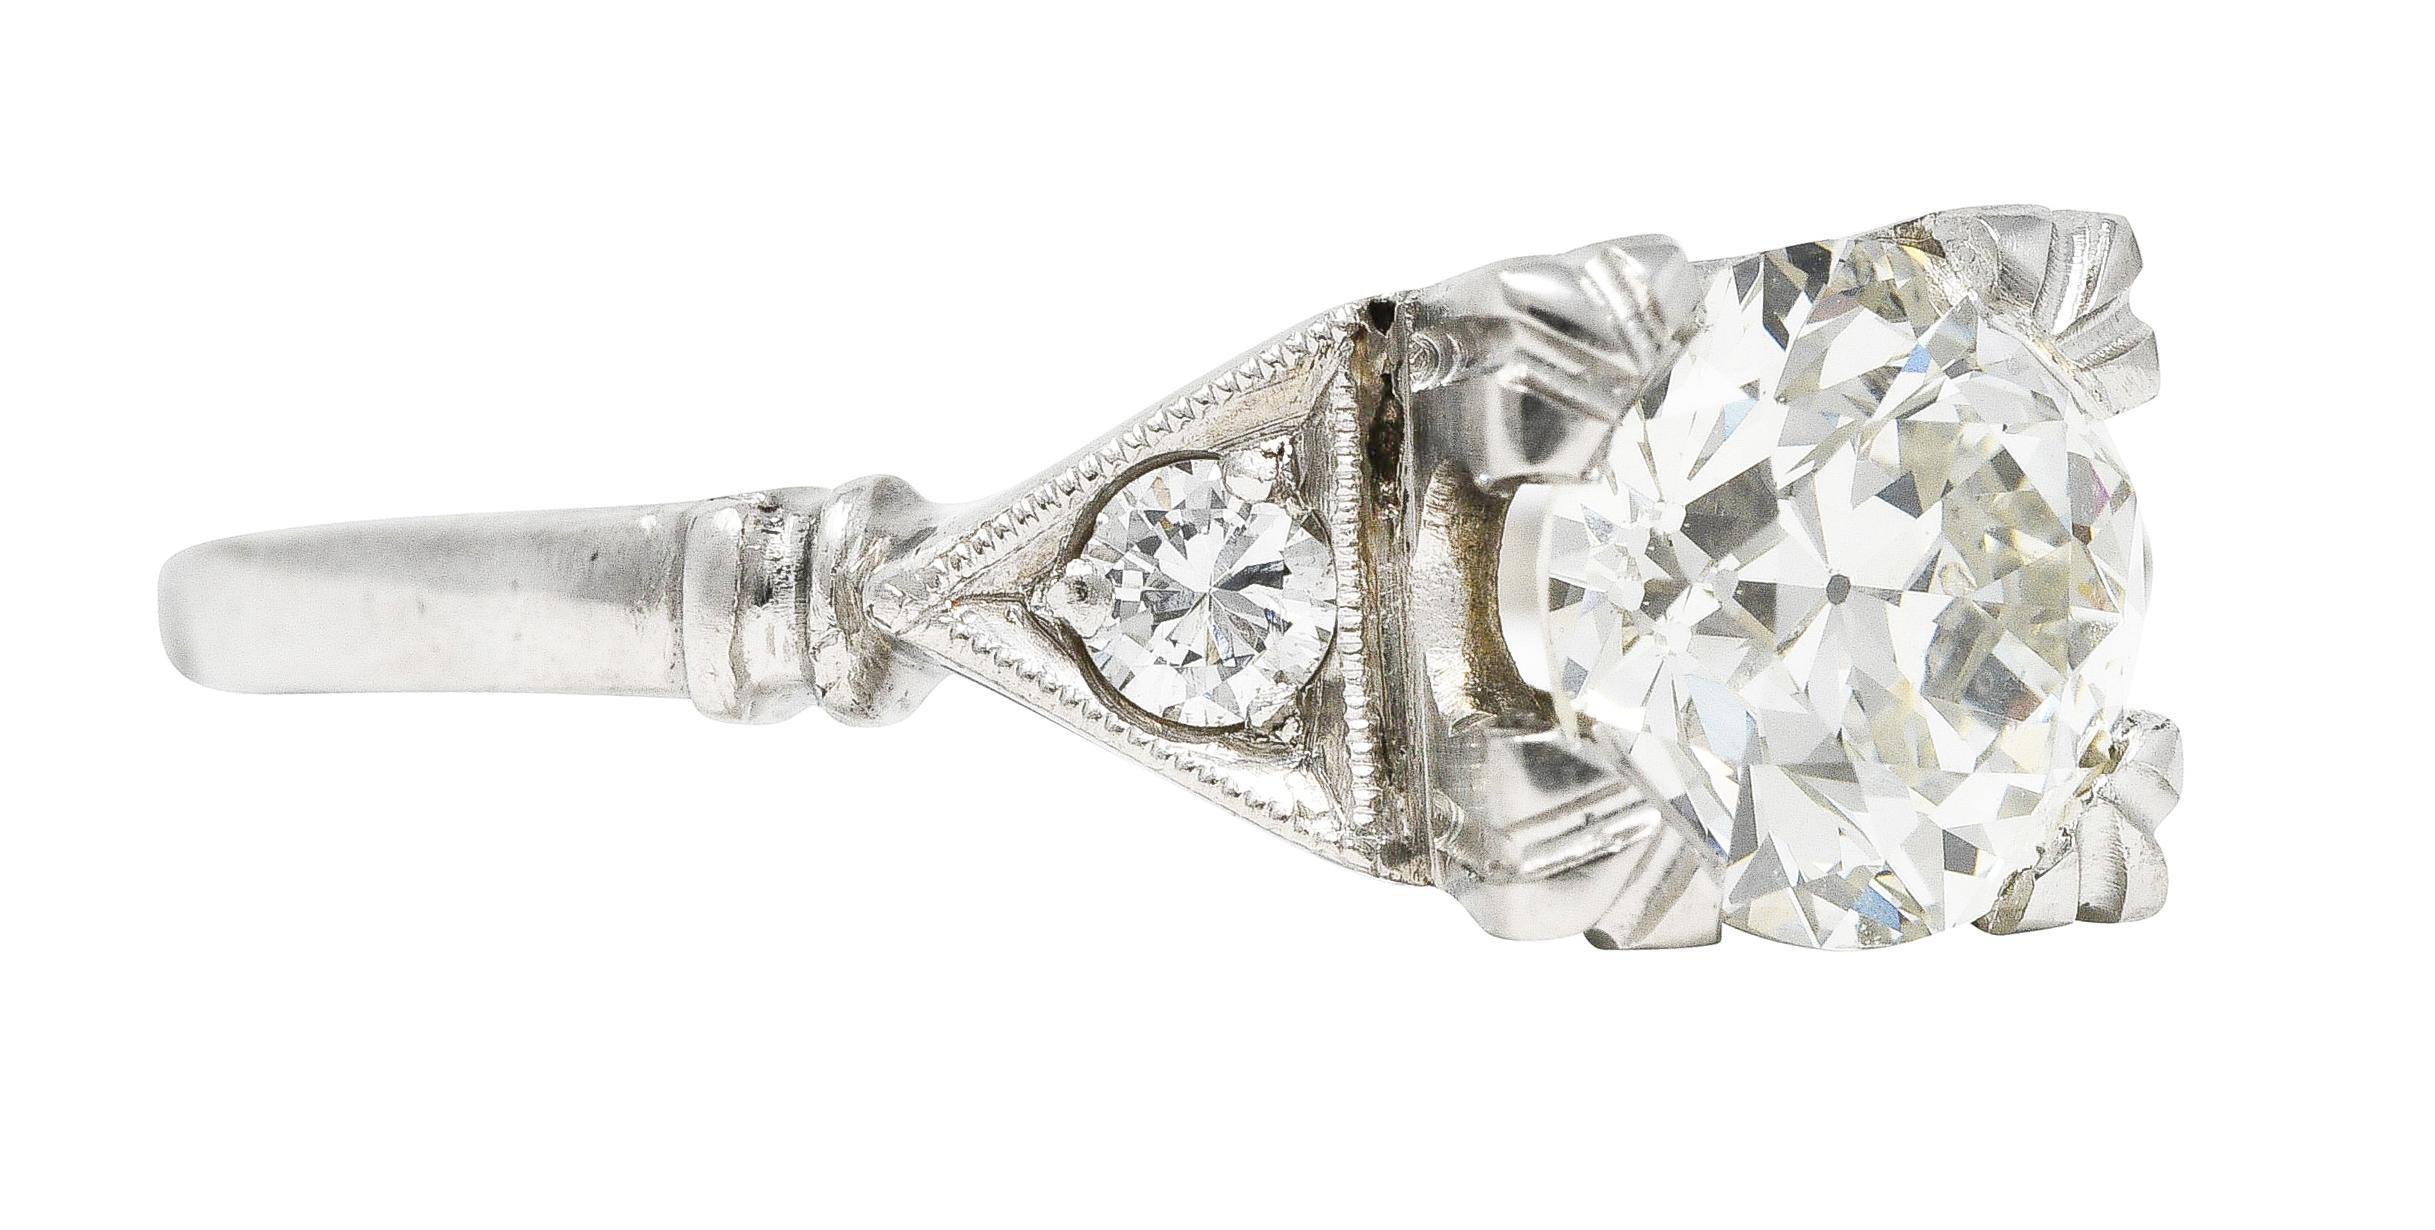 In der Mitte ein alter europäischer Diamant mit einem Gesamtgewicht von 1,14 Karat - Farbe K und Reinheit VVS1. In einem stilisierten Korb mit dreifach geteilten Zacken gefasst und von dreieckigen Kathedralschultern flankiert. Mit perlenbesetzten